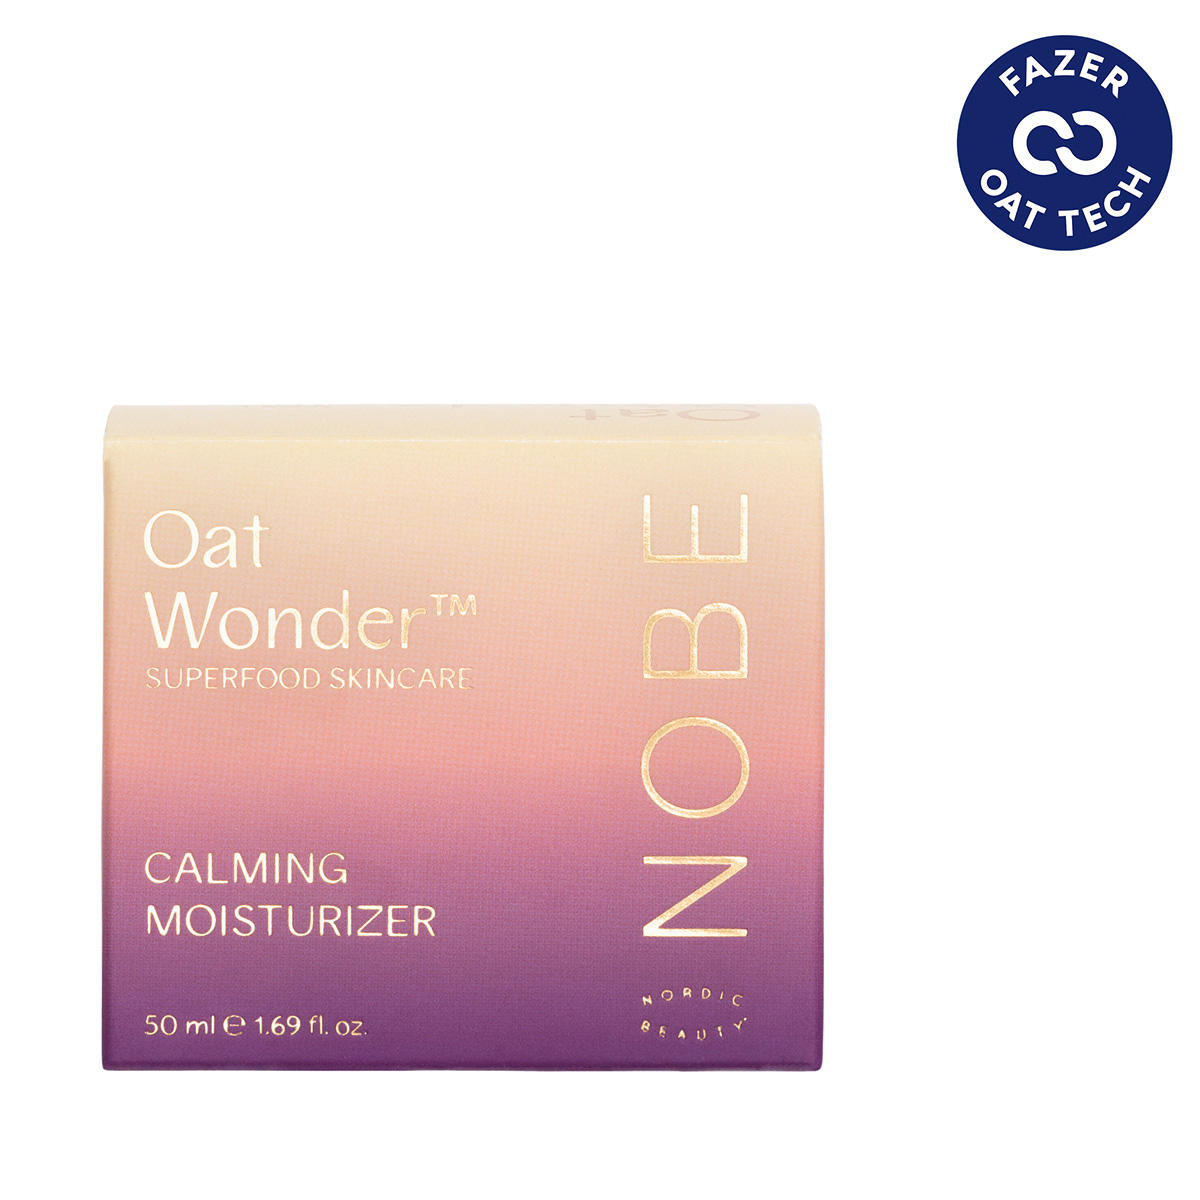 NOBE Oat Wonder® Calming Moisturizer 50 ml - 3